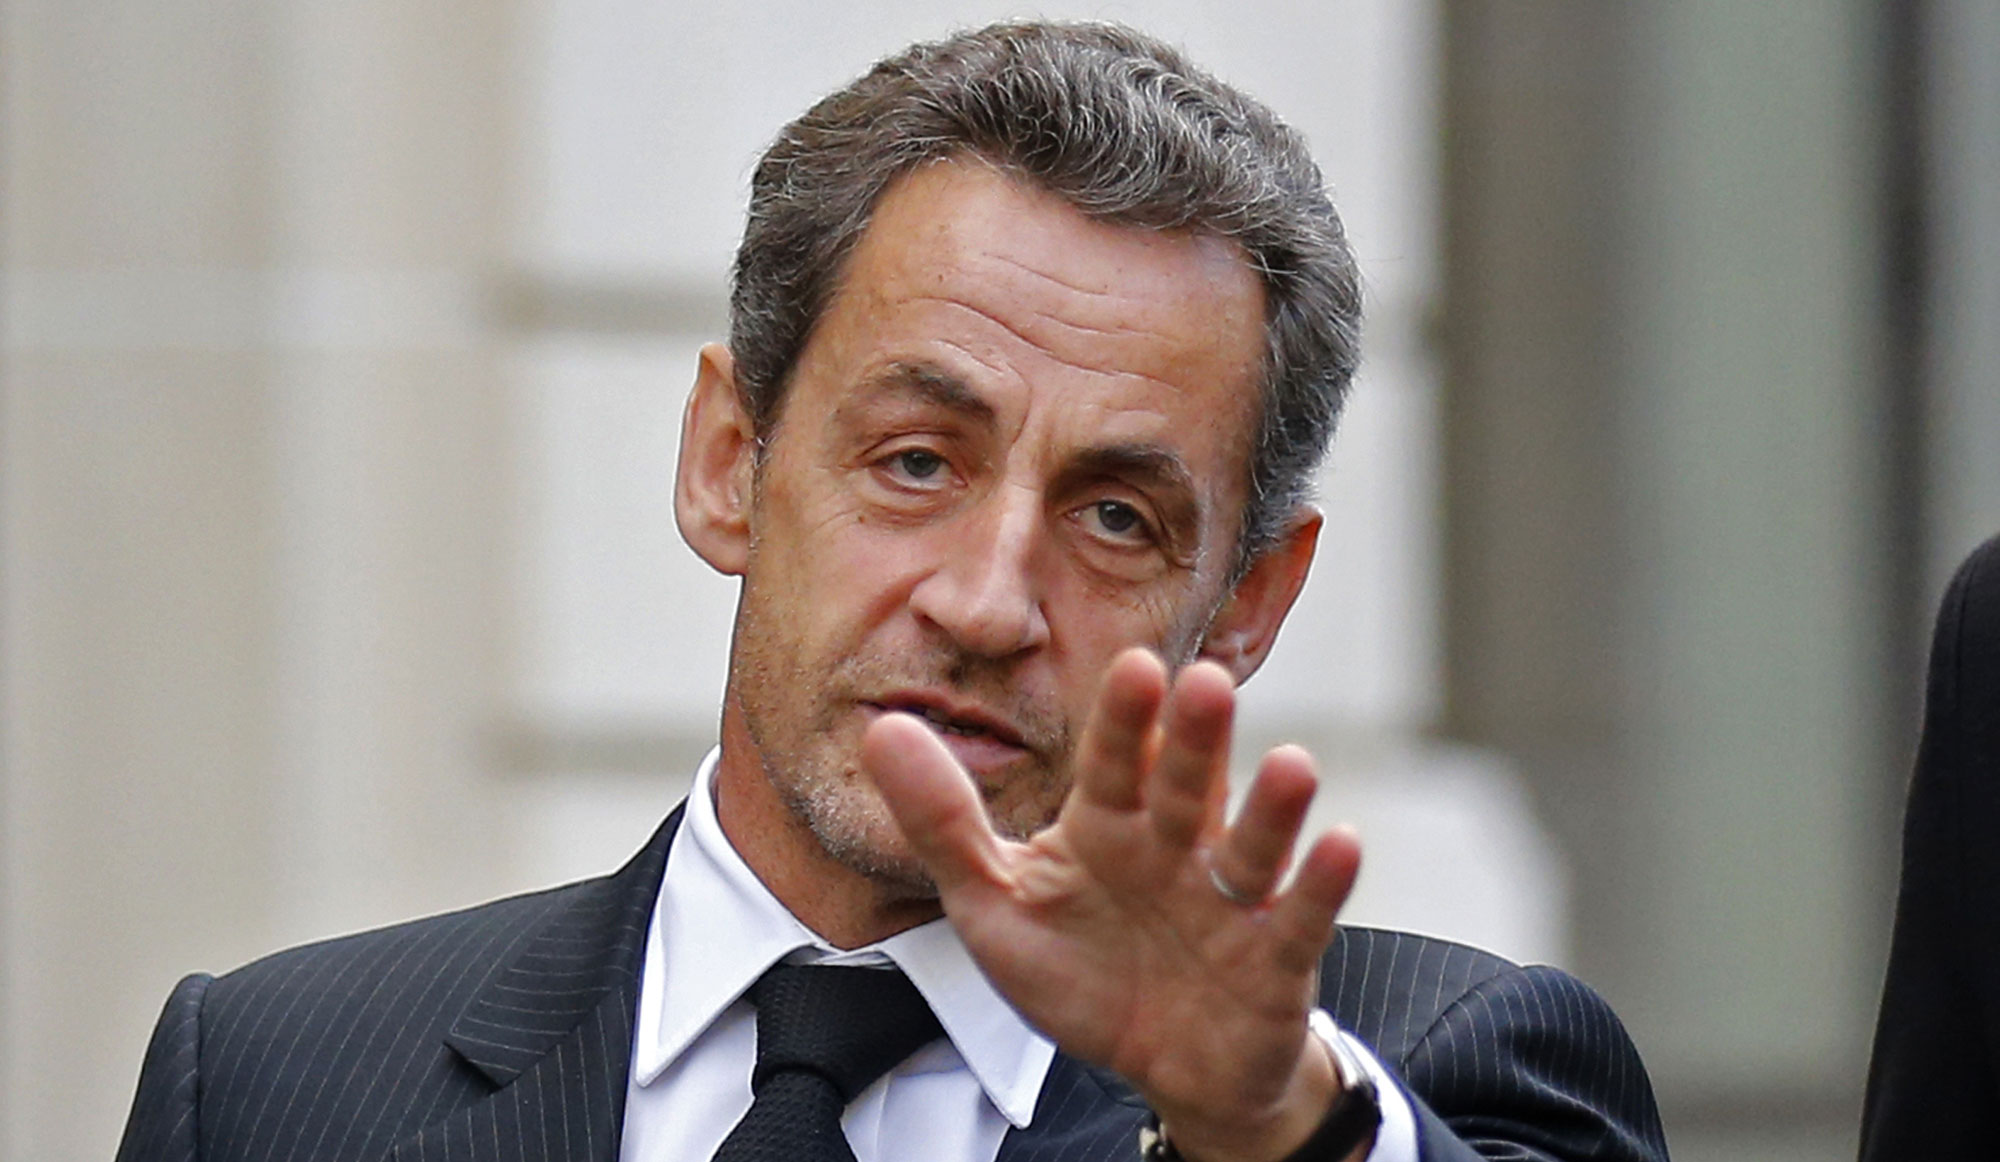 http://cdn-parismatch.ladmedia.fr/var/news/storage/images/paris-match/actu/societe/nicolas-sarkozy-mis-en-examen-pour-abus-de-faiblesse-234937/2713276-1-fre-FR/Nicolas-Sarkozy-mis-en-examen-pour-abus-de-faiblesse.jpg